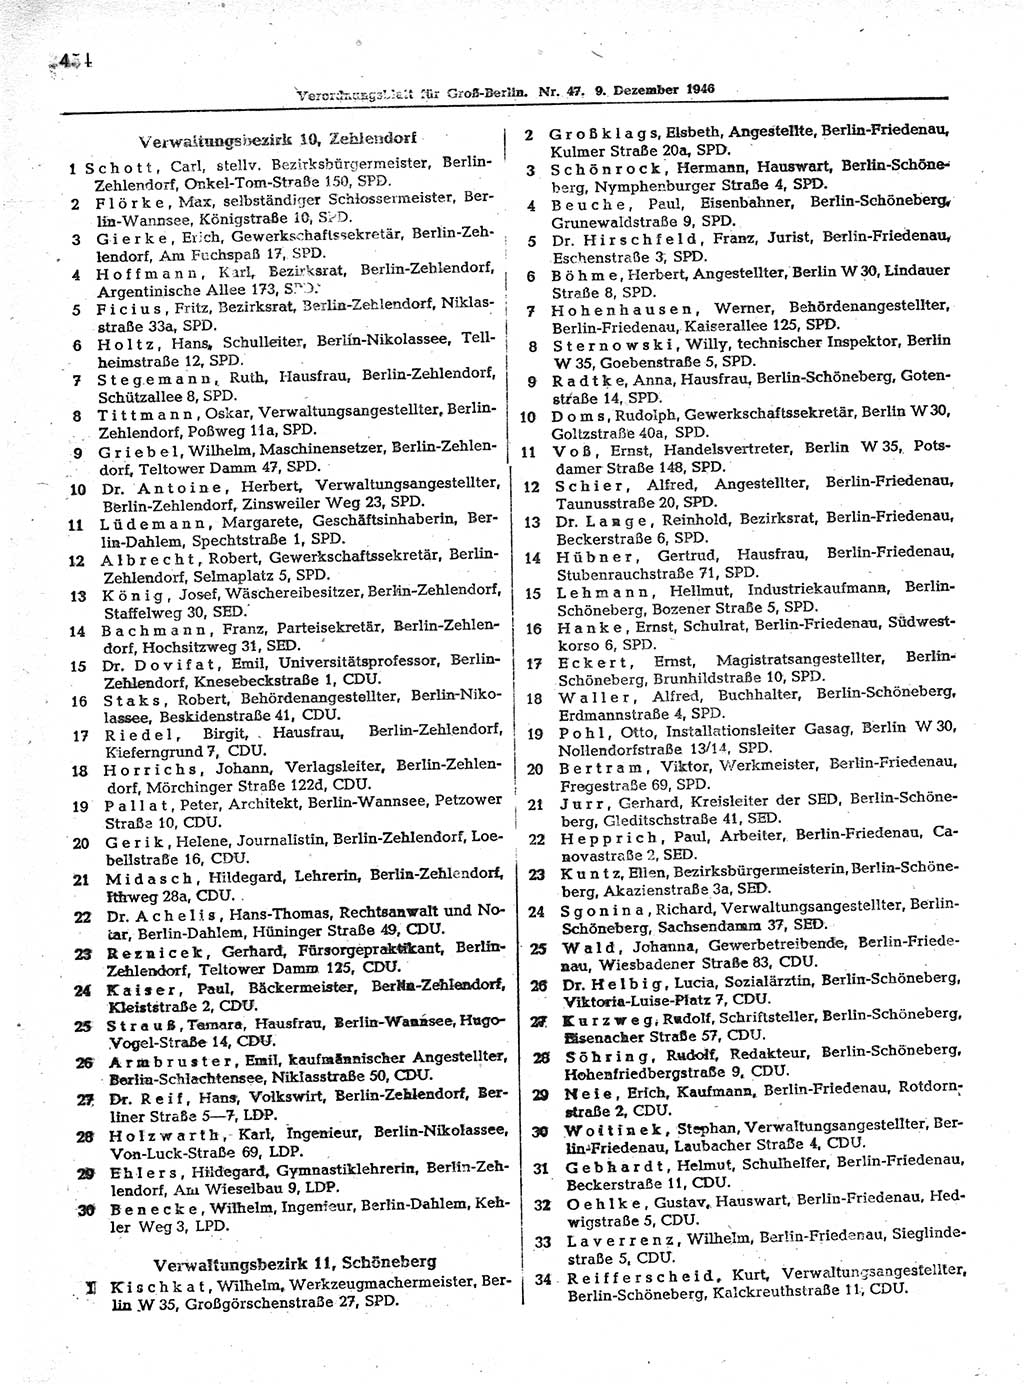 Verordnungsblatt (VOBl.) der Stadt Berlin, für Groß-Berlin 1946, Seite 454 (VOBl. Bln. 1946, S. 454)